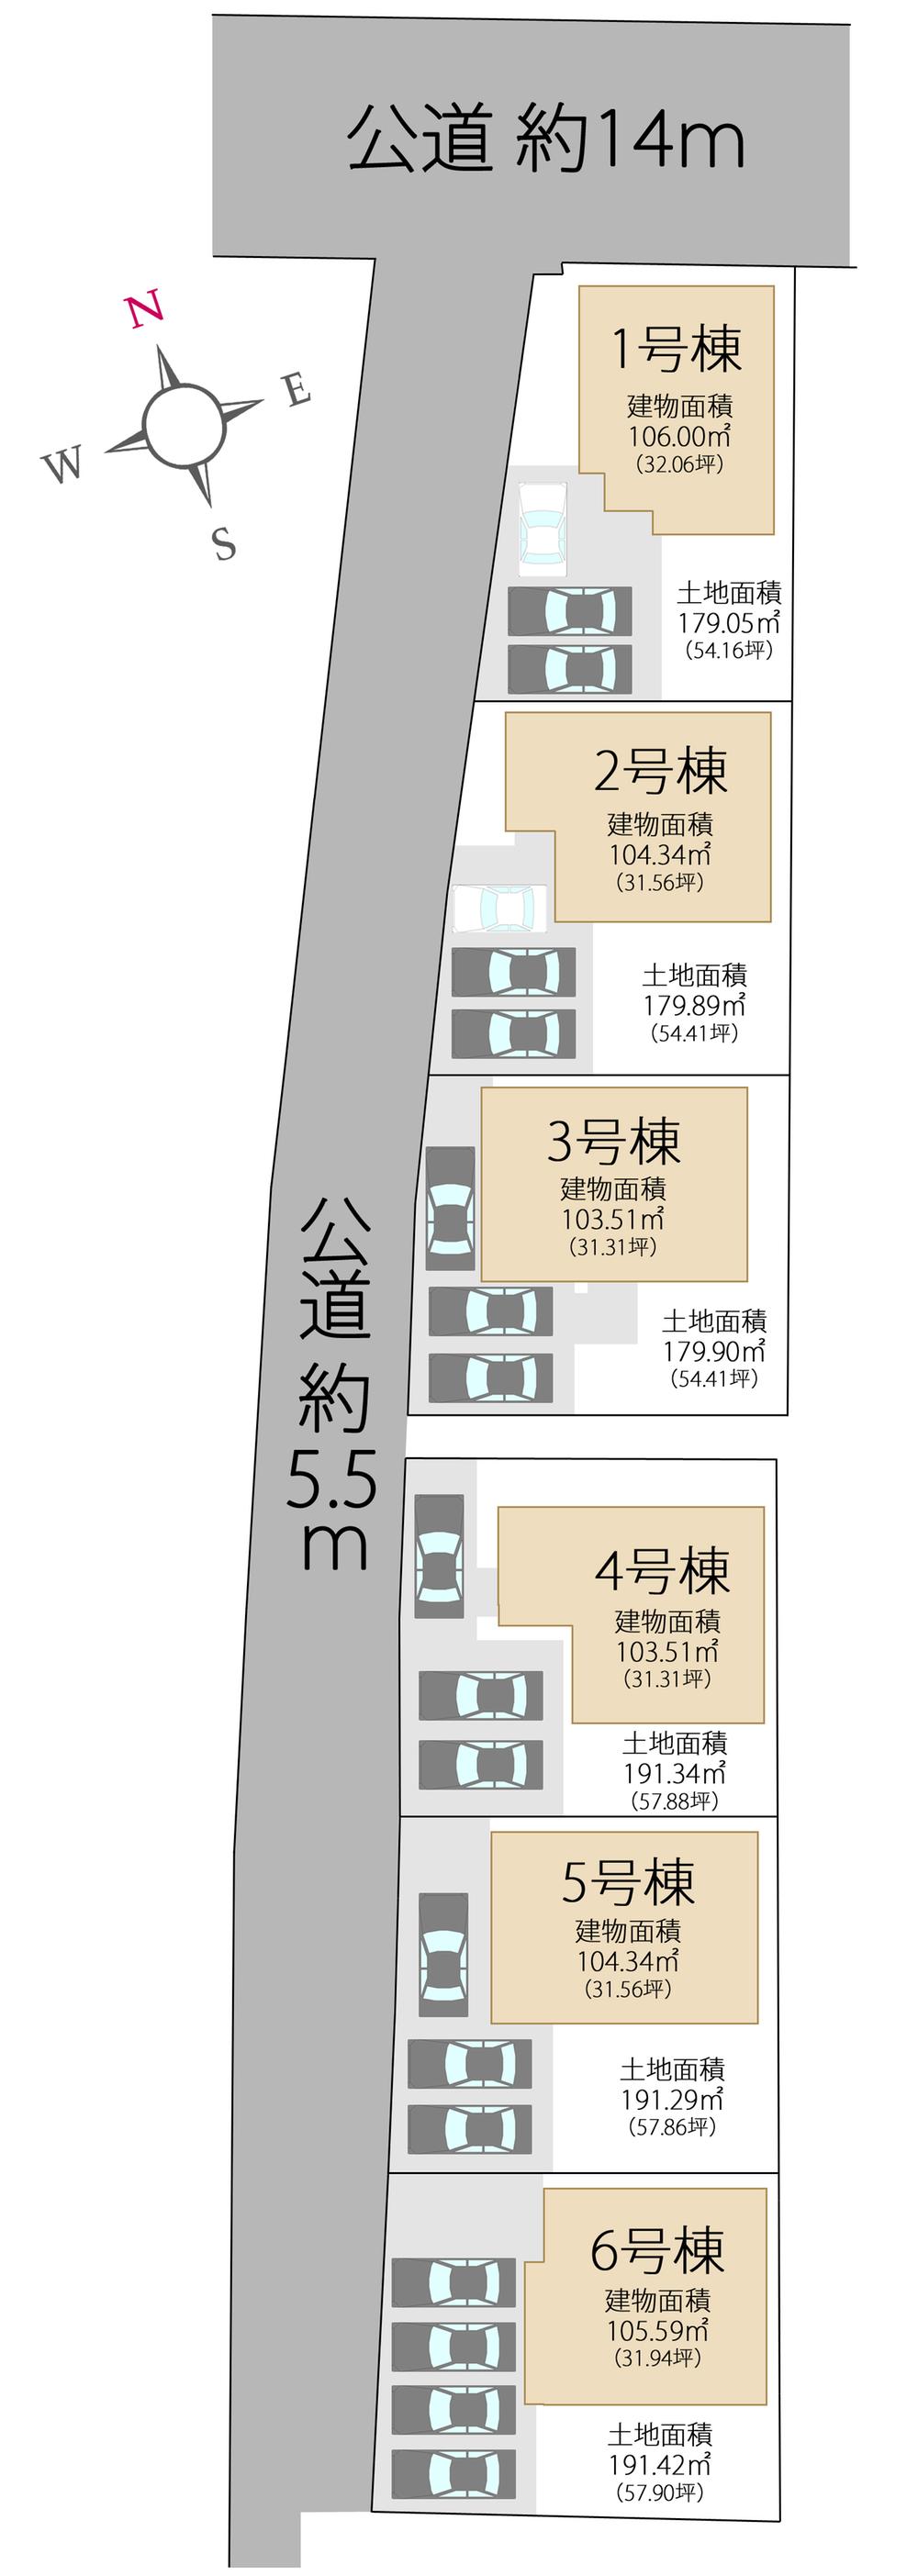 Compartment figure. 20.8 million yen, 4LDK, Land area 179.9 sq m , Building area 103.51 sq m